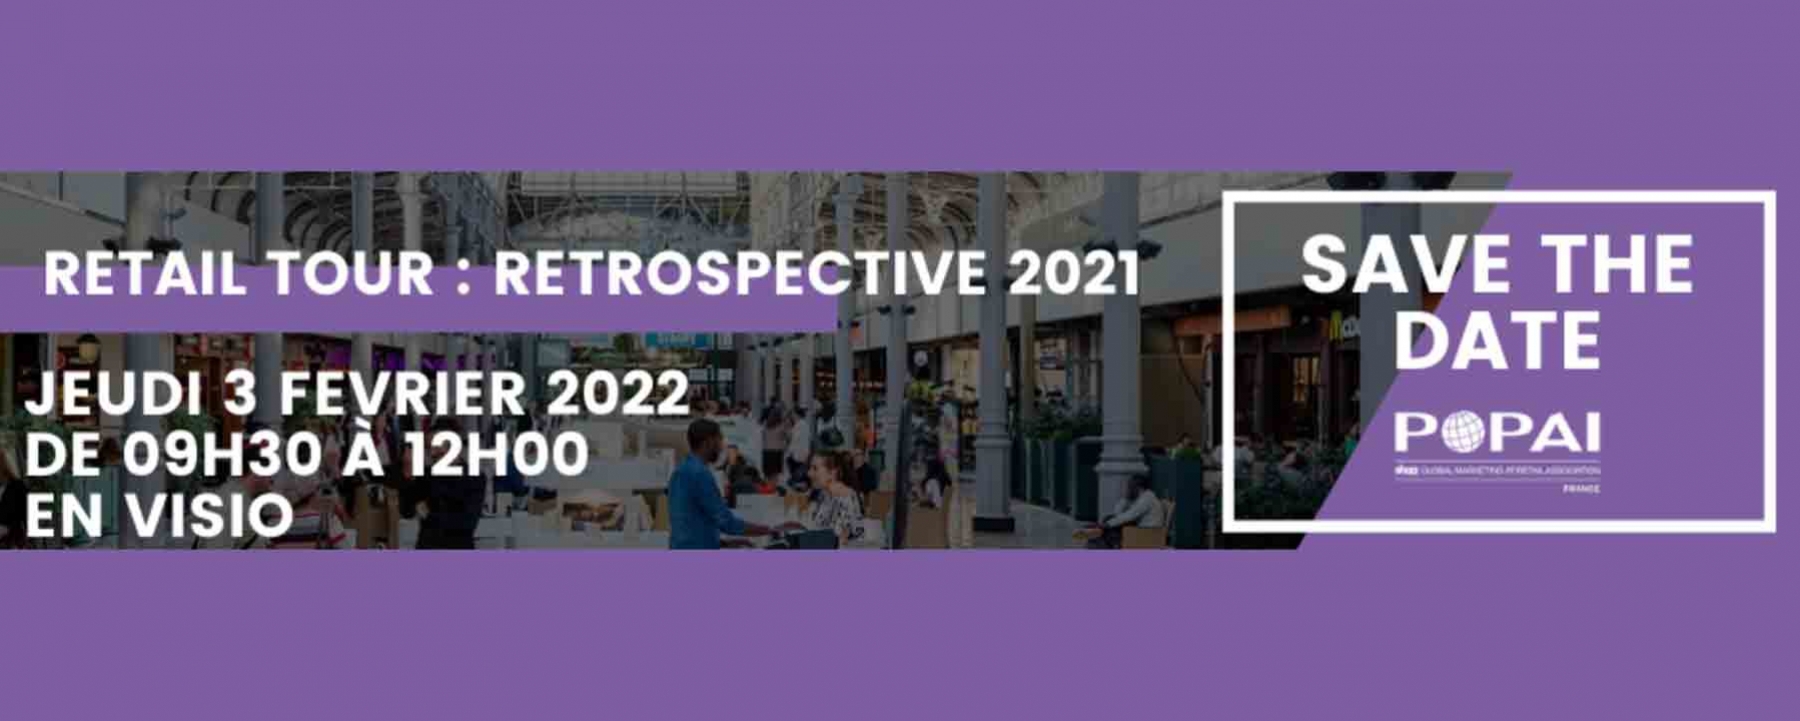 Retail Tour : Retrospective 2021 le 3 février 2022 POPAI